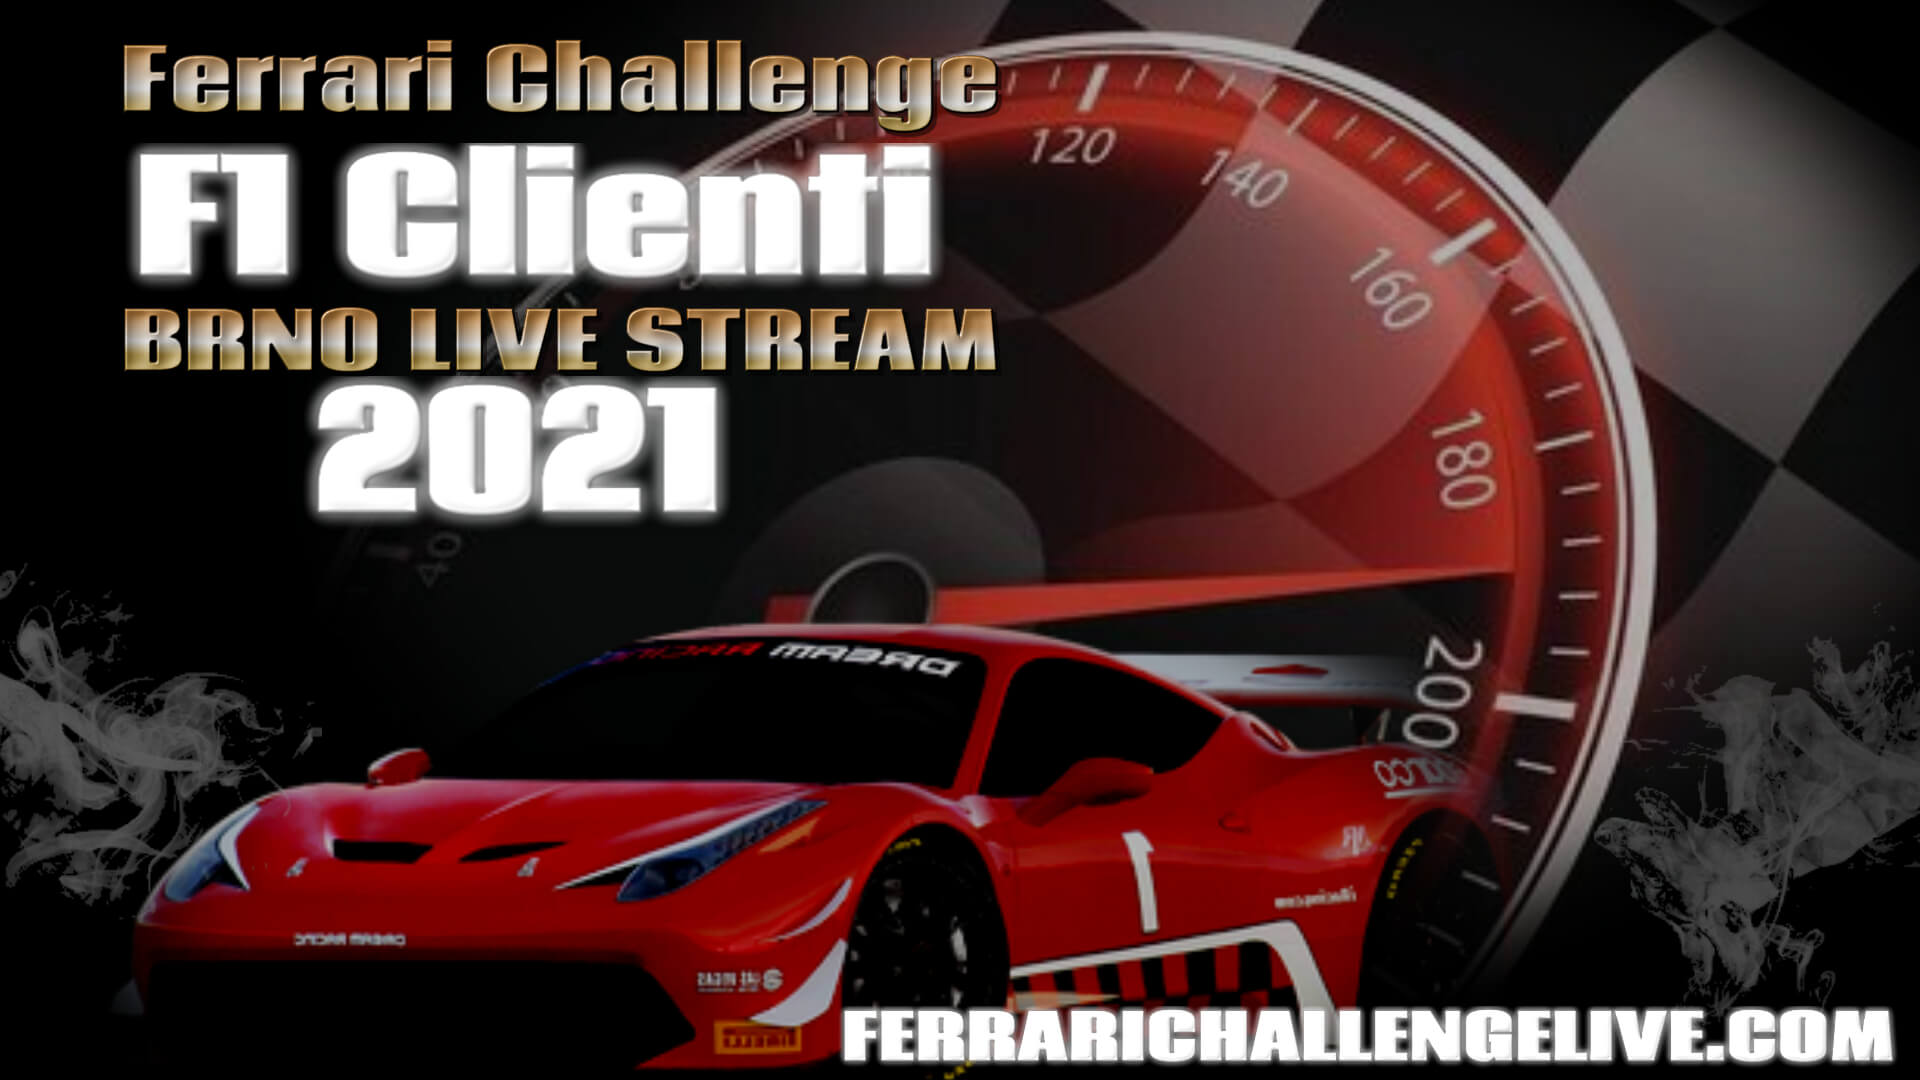 ferrari-challenge-f1-clienti-brno-live-stream